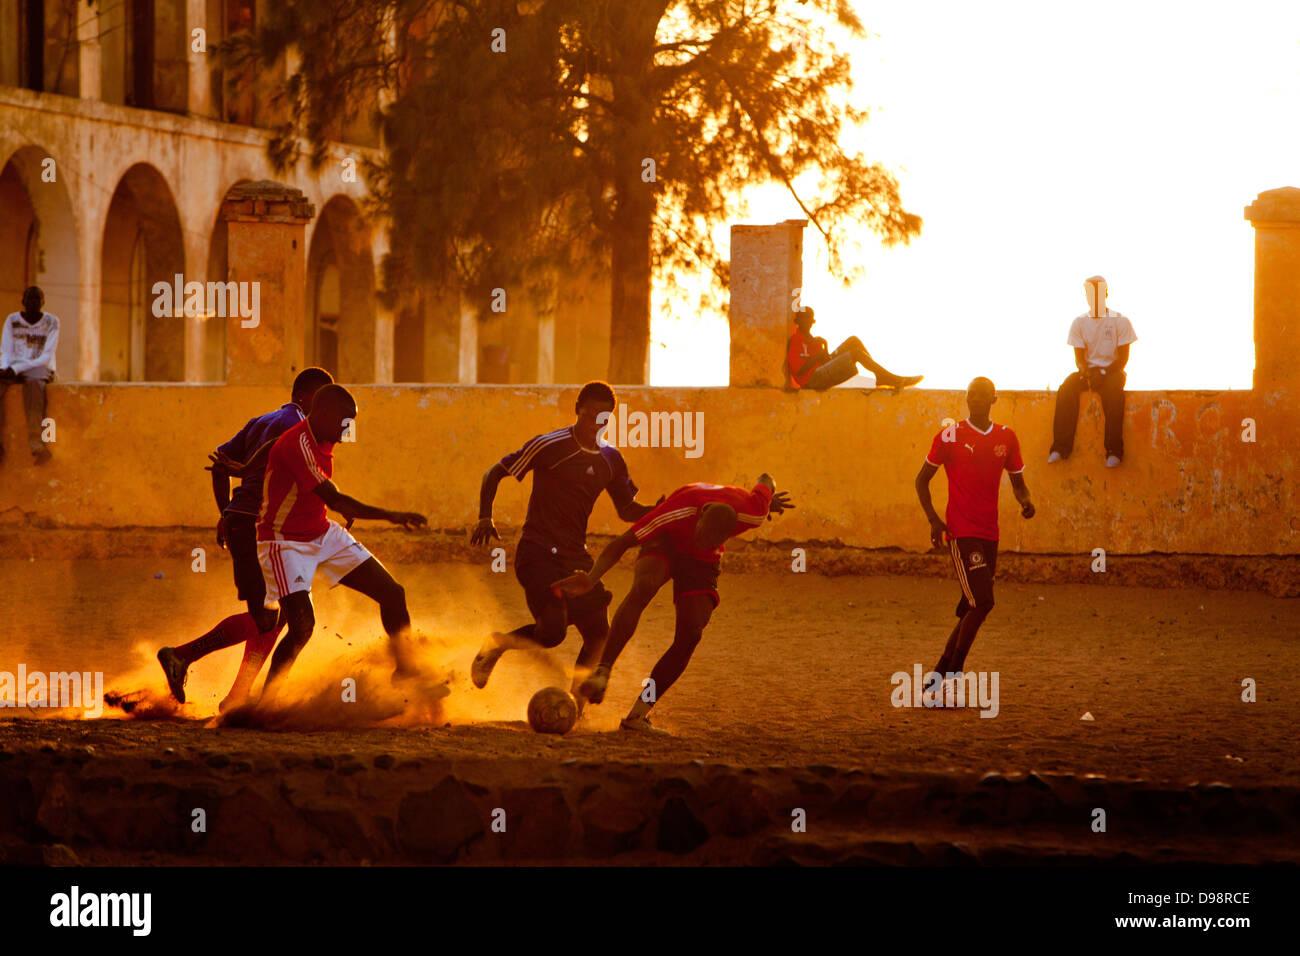 Le football sur la place principale de l'île de Gorée, Dakar, Sénégal. Banque D'Images